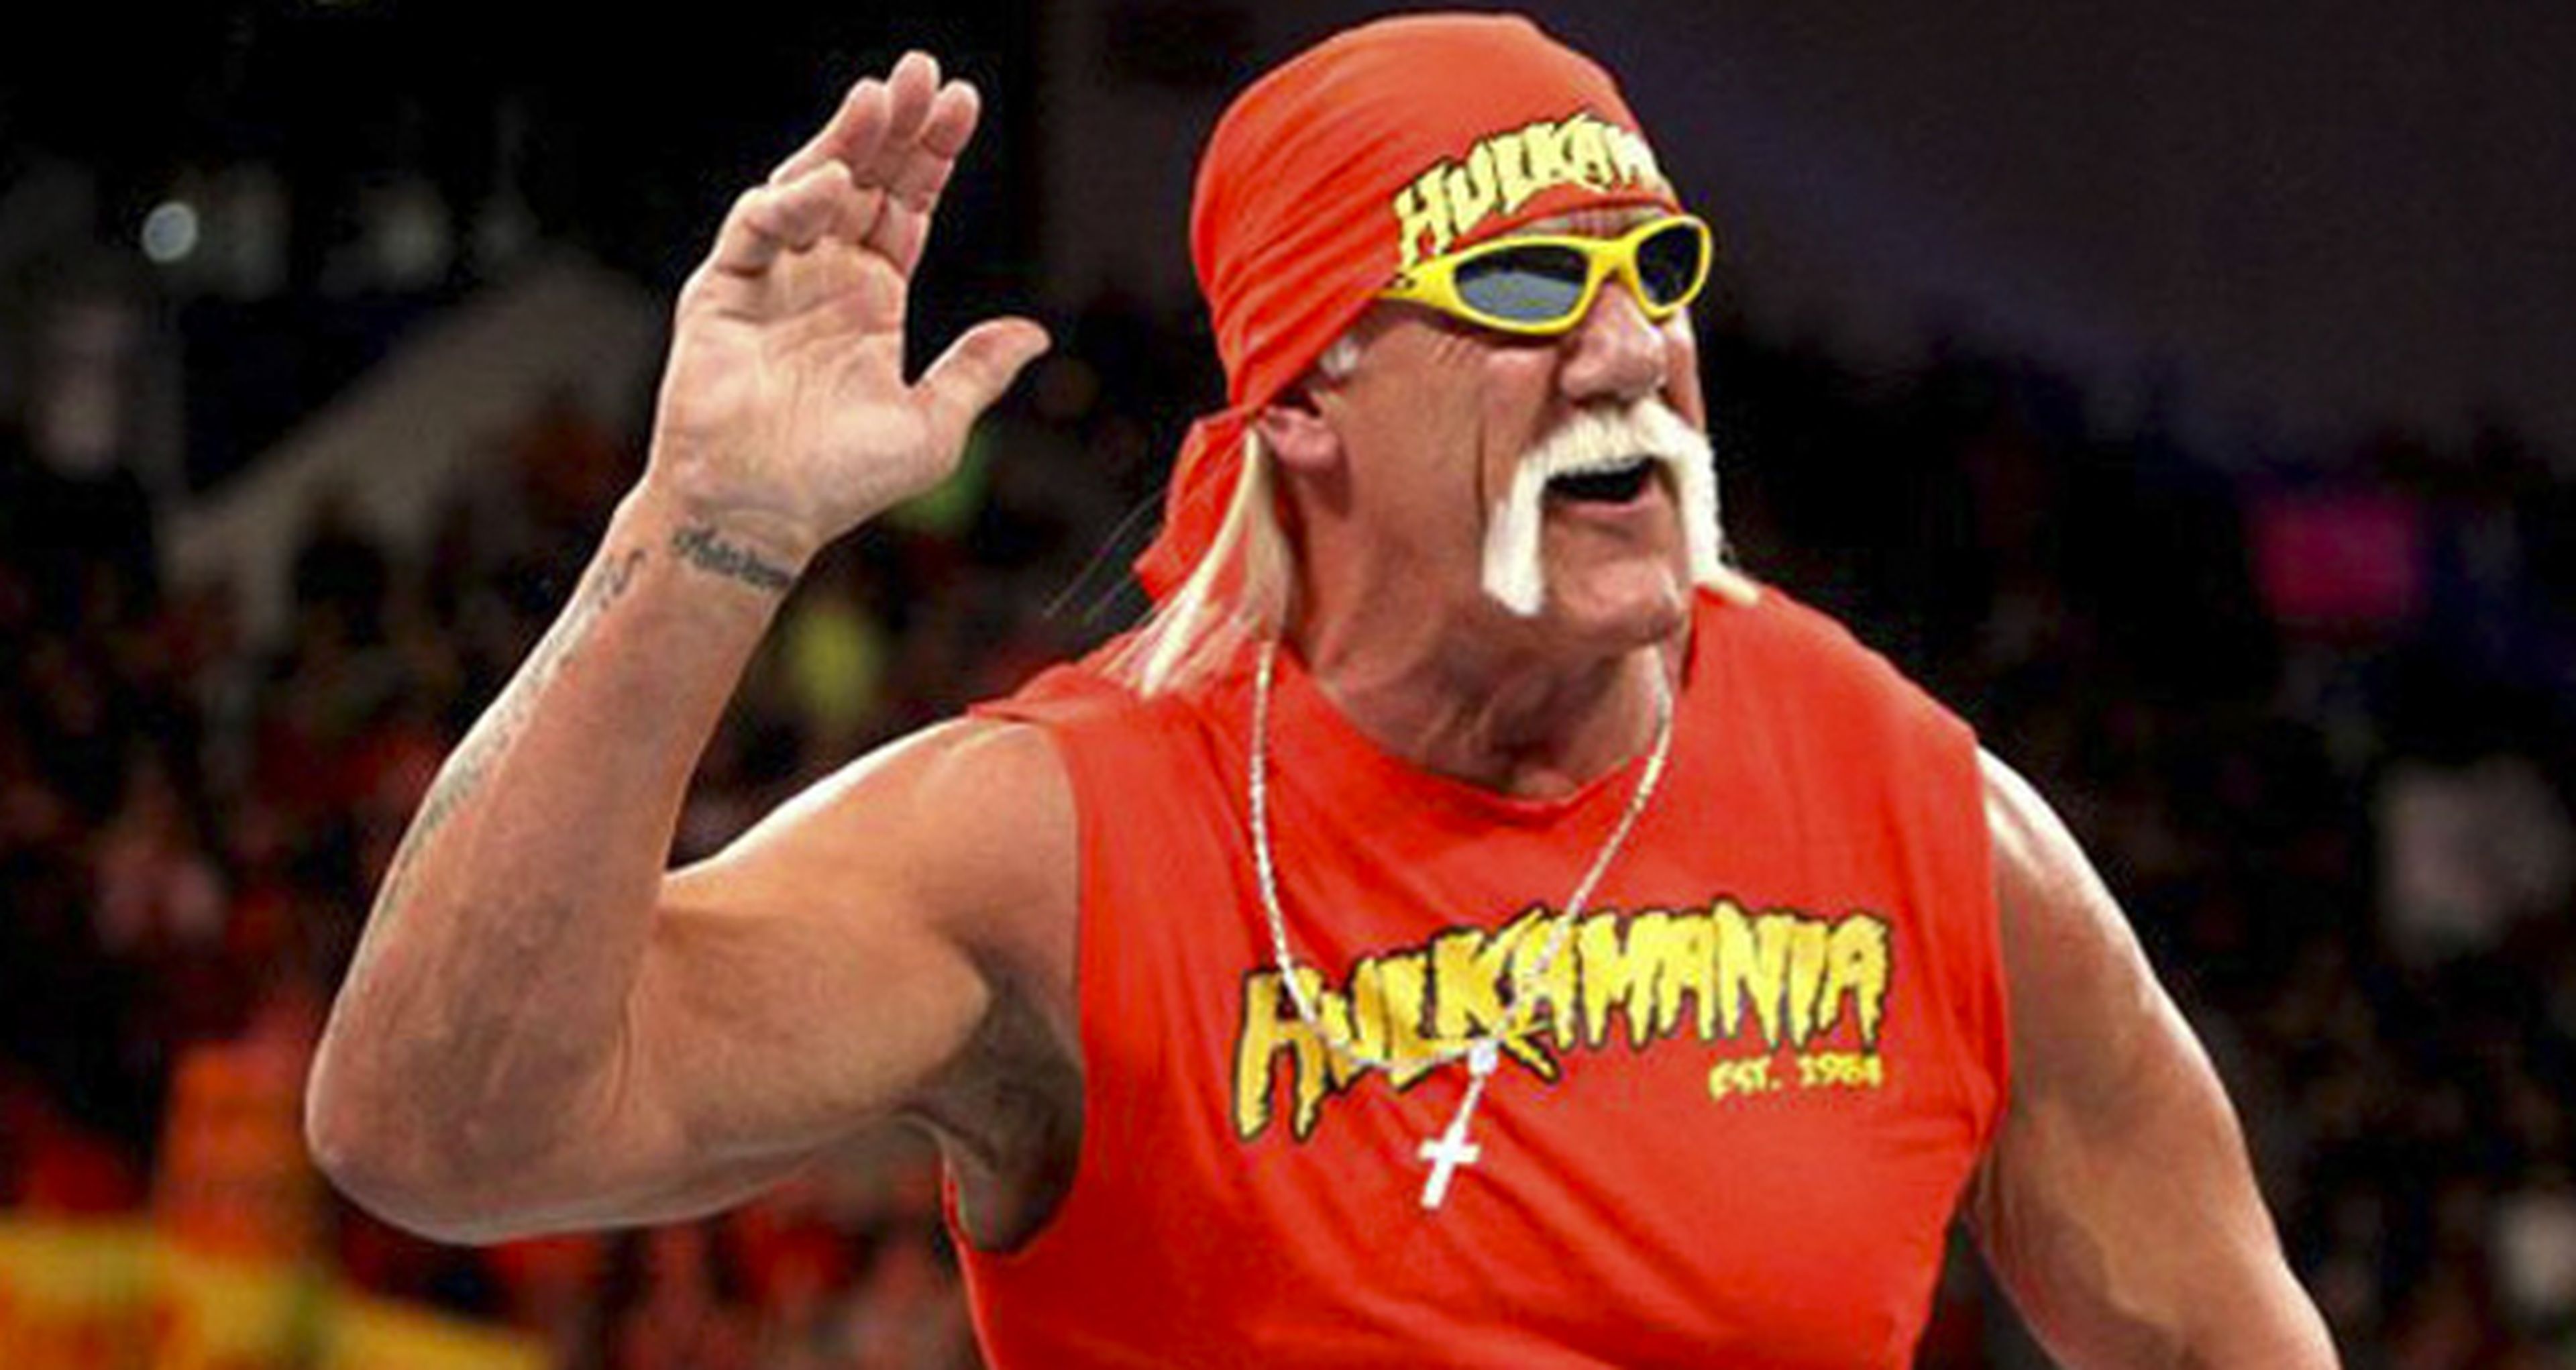 Los mercenarios 4 podría contar con Hulk Hogan como villano